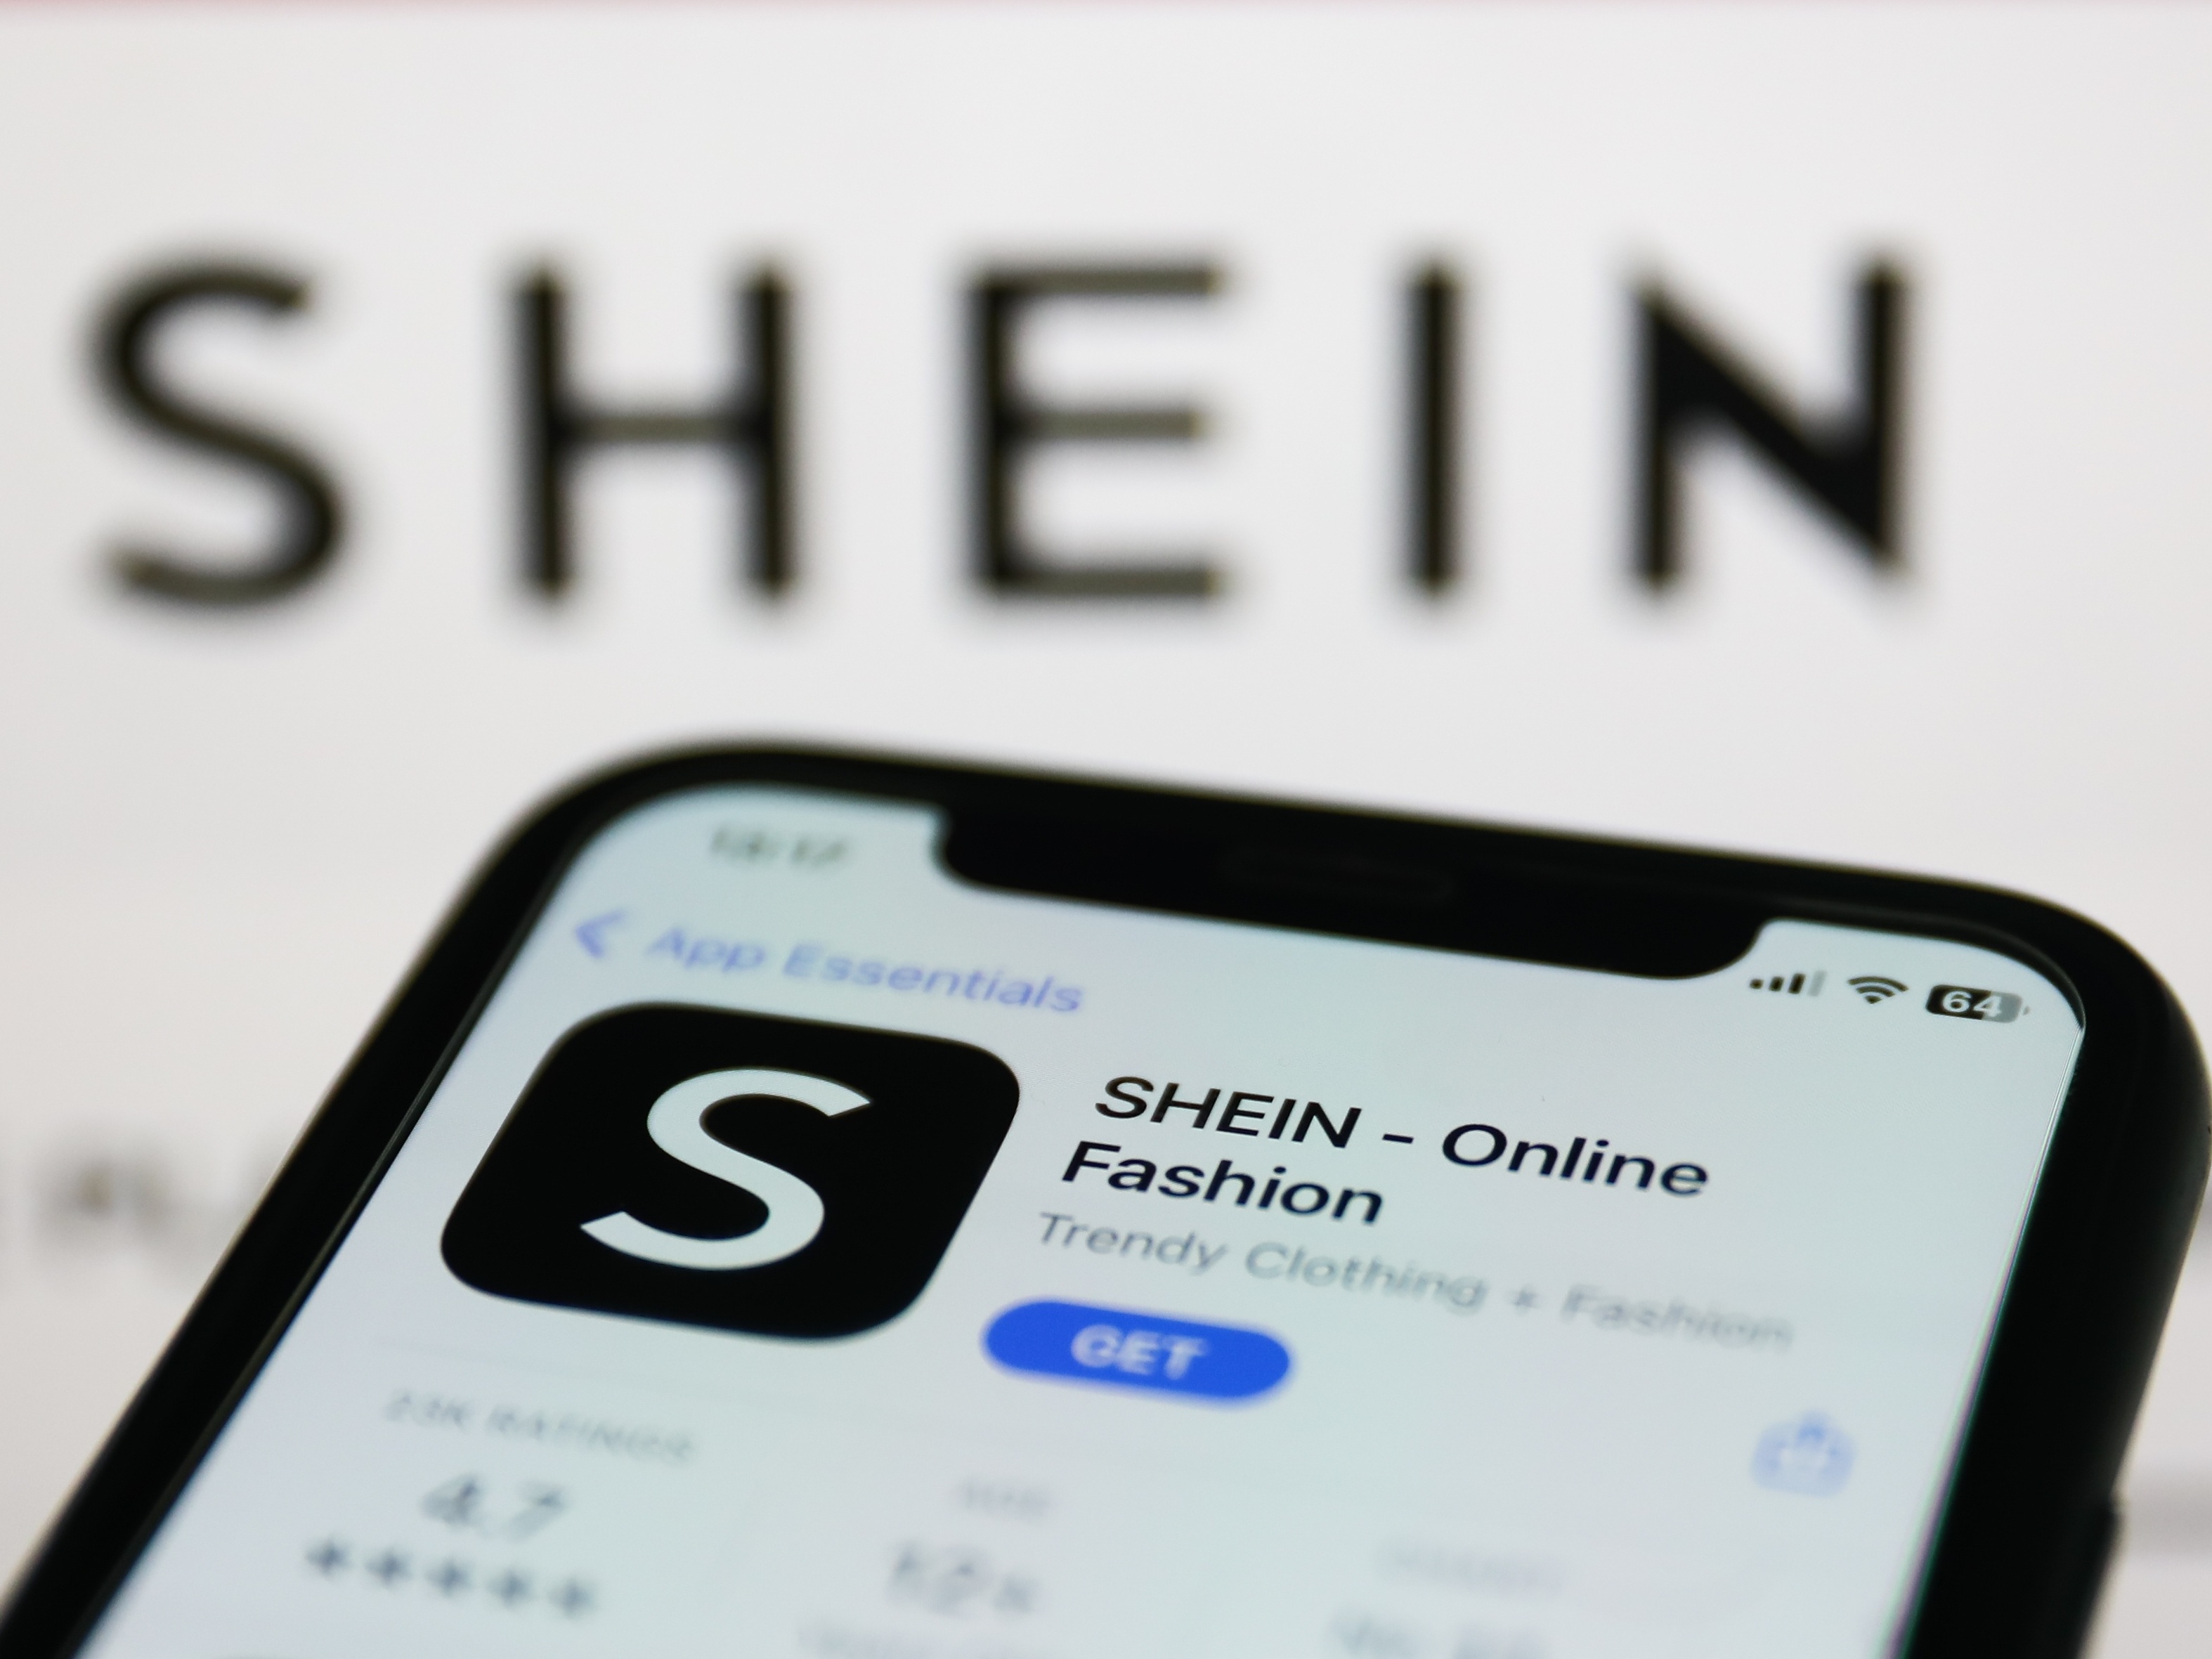 Shein e AliExpress aderem ao Remessa Conforme e terão isenção em compras  abaixo de US$ 50